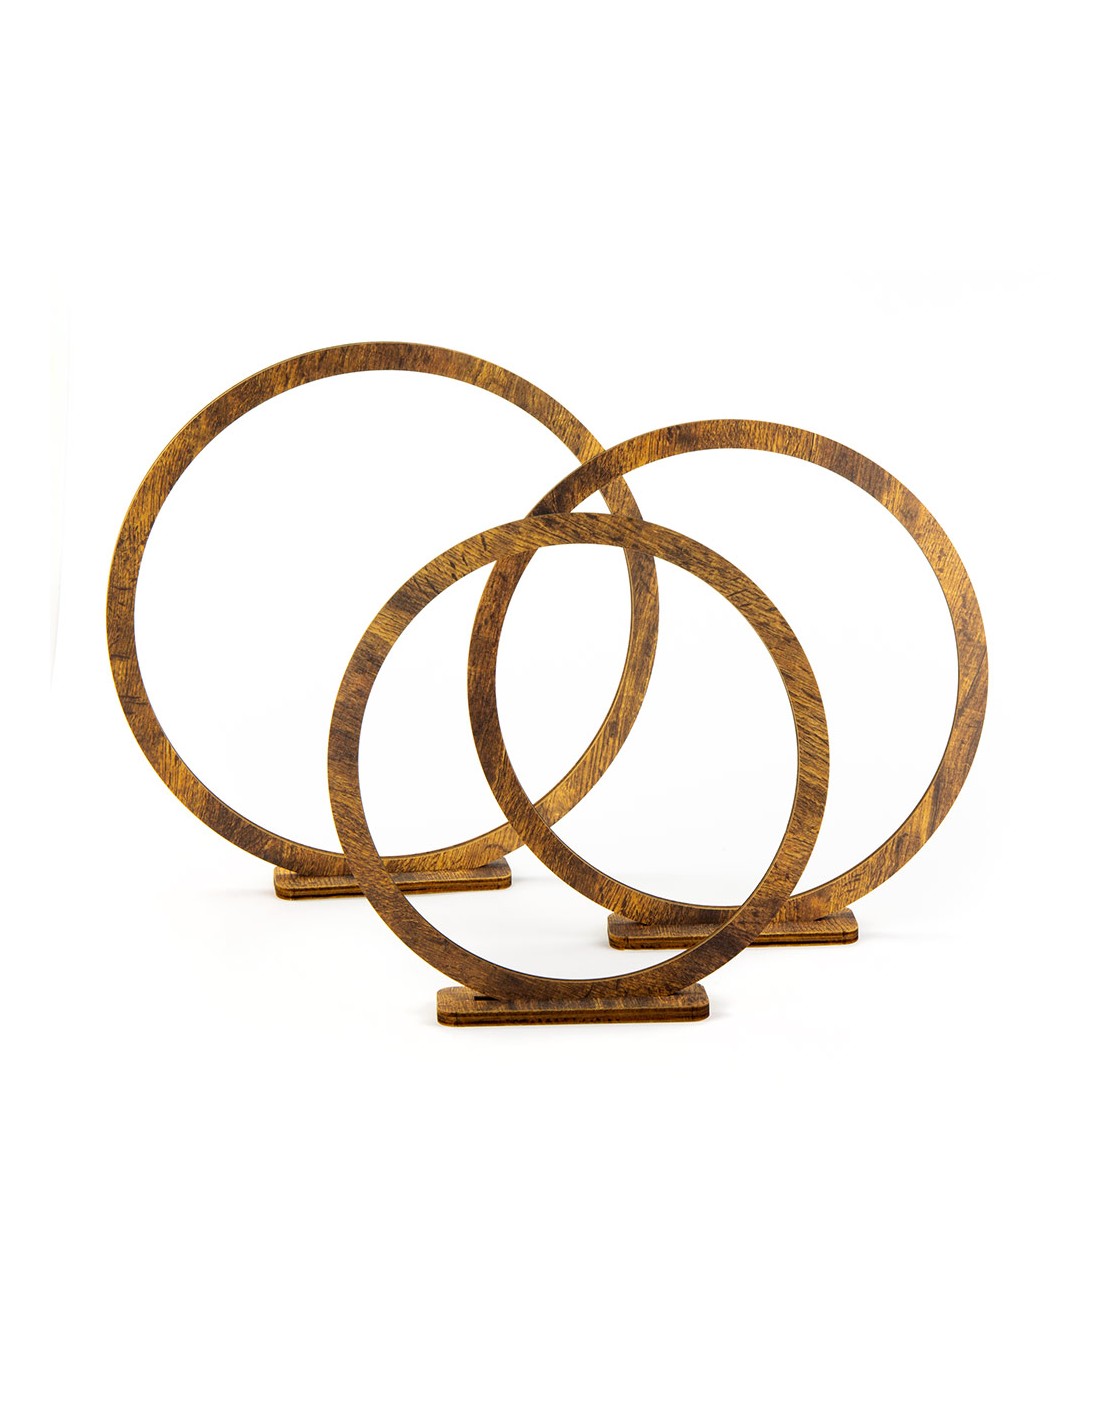 Struttura in legno con un cerchio al centro dell'immagine